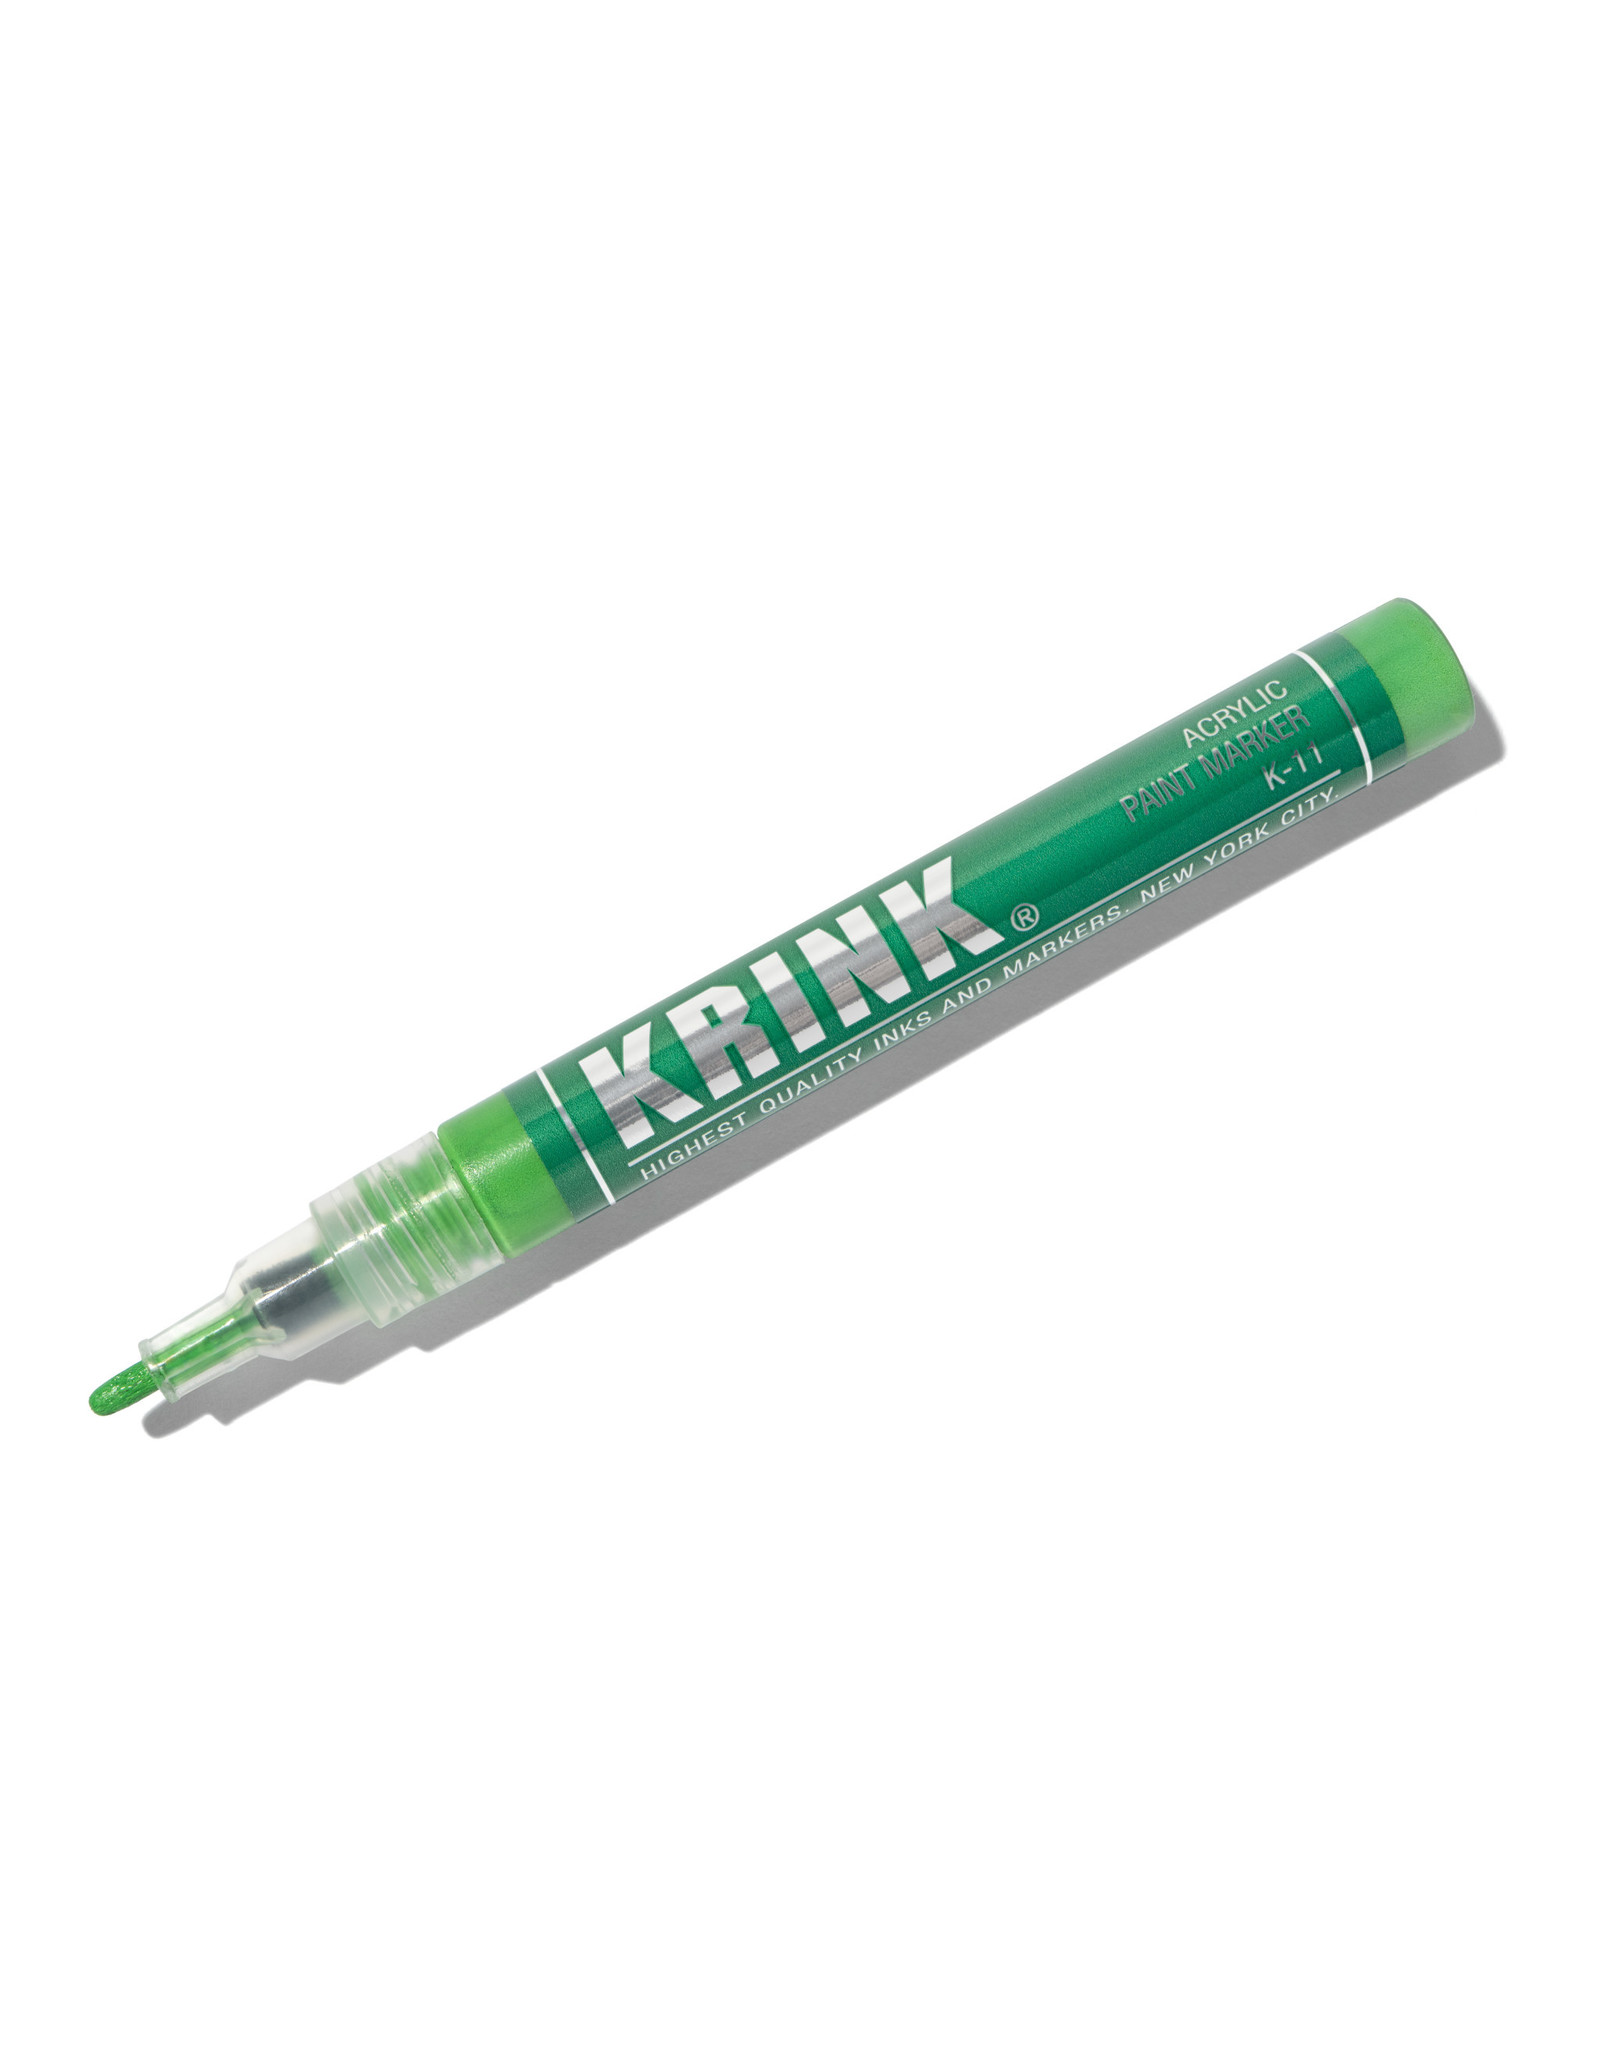 Krink Krink K-11 Acrylic Paint Marker, Green